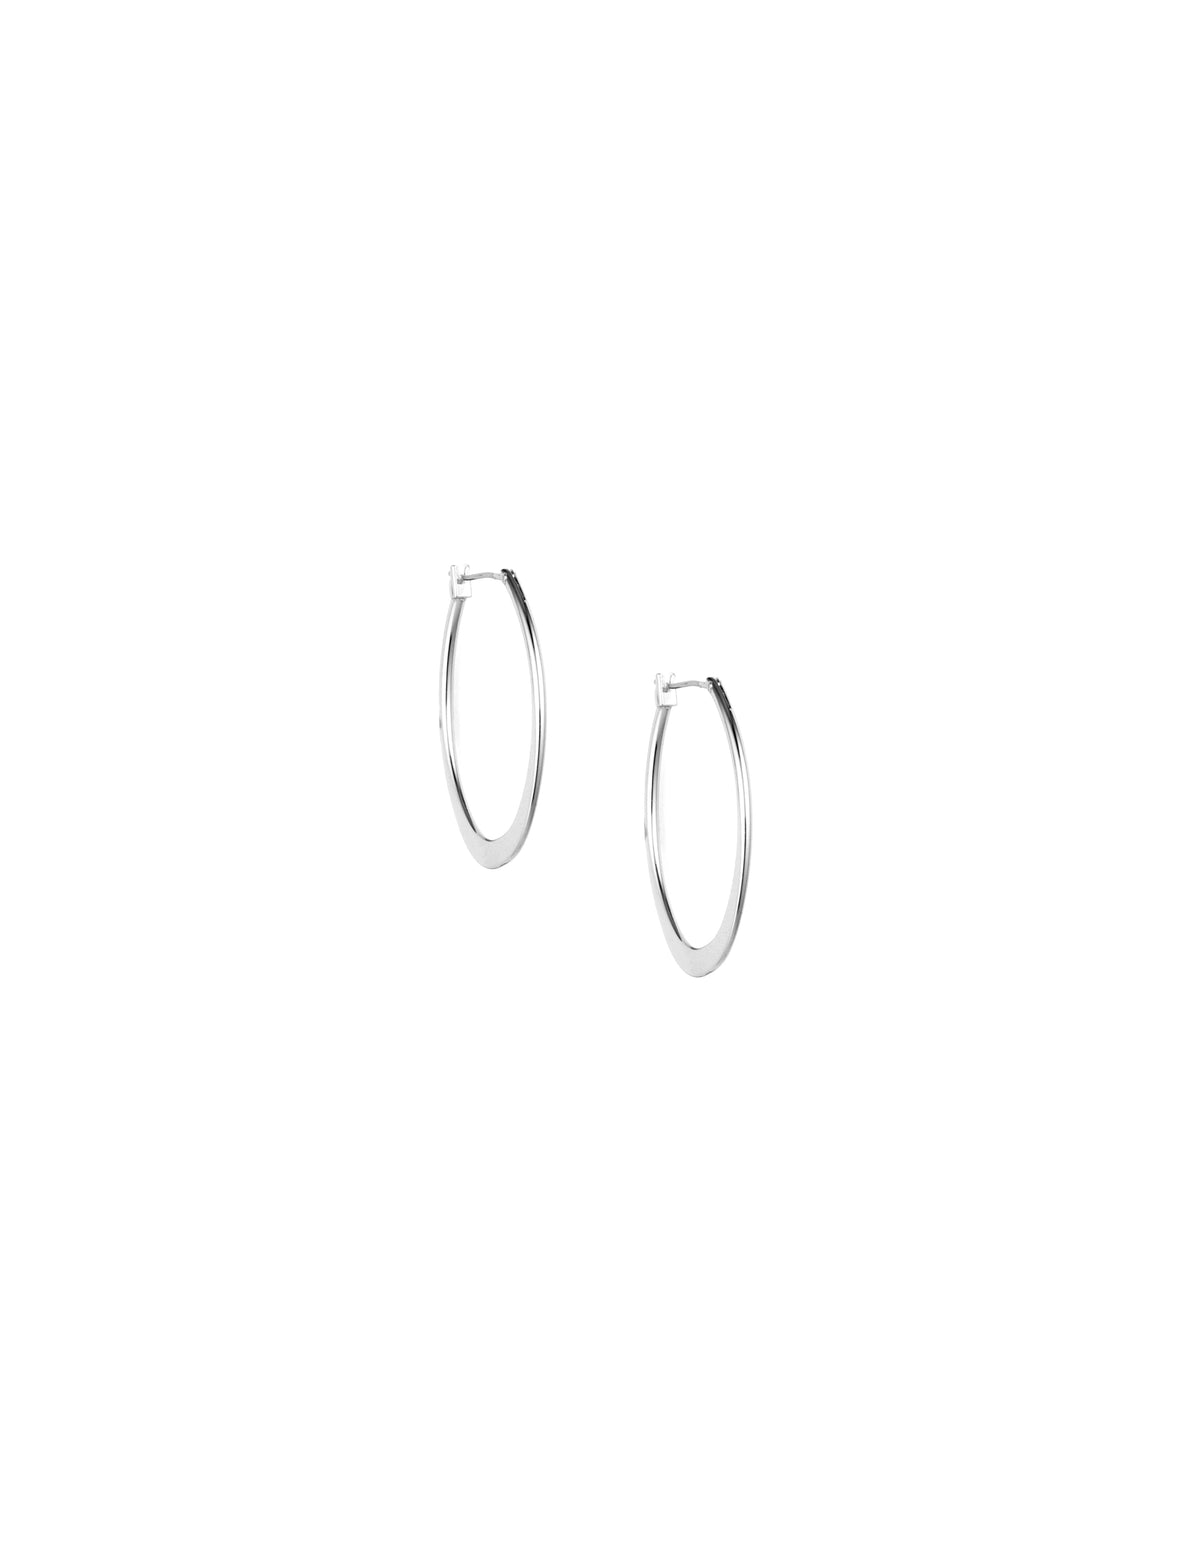 Anne Klein Silver Tone Silver Large Oval Hoop Earrings